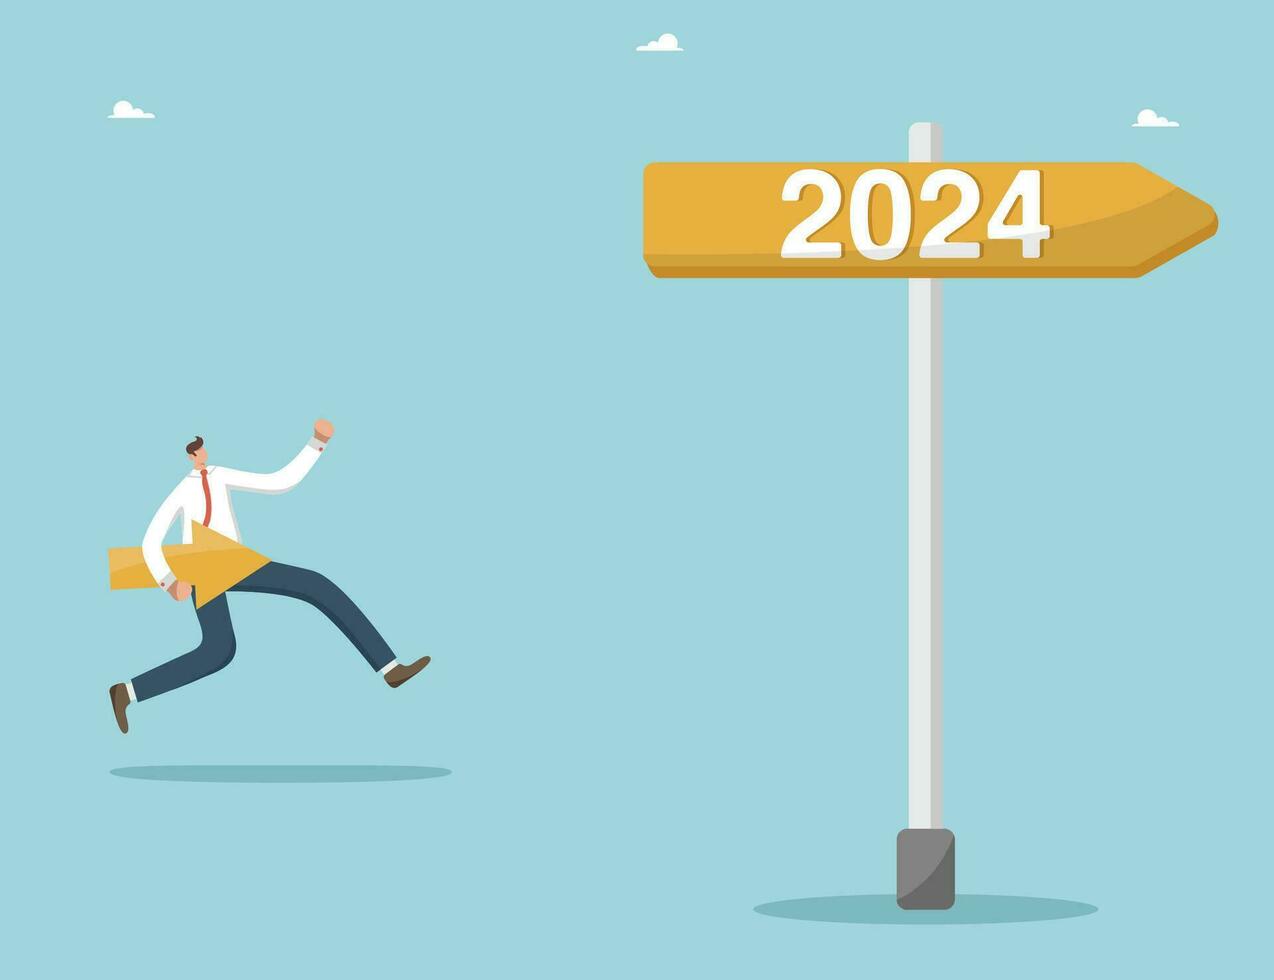 estratégico planejamento para alcançar sucesso dentro Novo ano 2024, direção do desenvolvimento e olhando para dentro futuro, configuração o negócio metas para chegando ano, homem corre ao longo a placa de sinalização para a Novo ano 2024. vetor